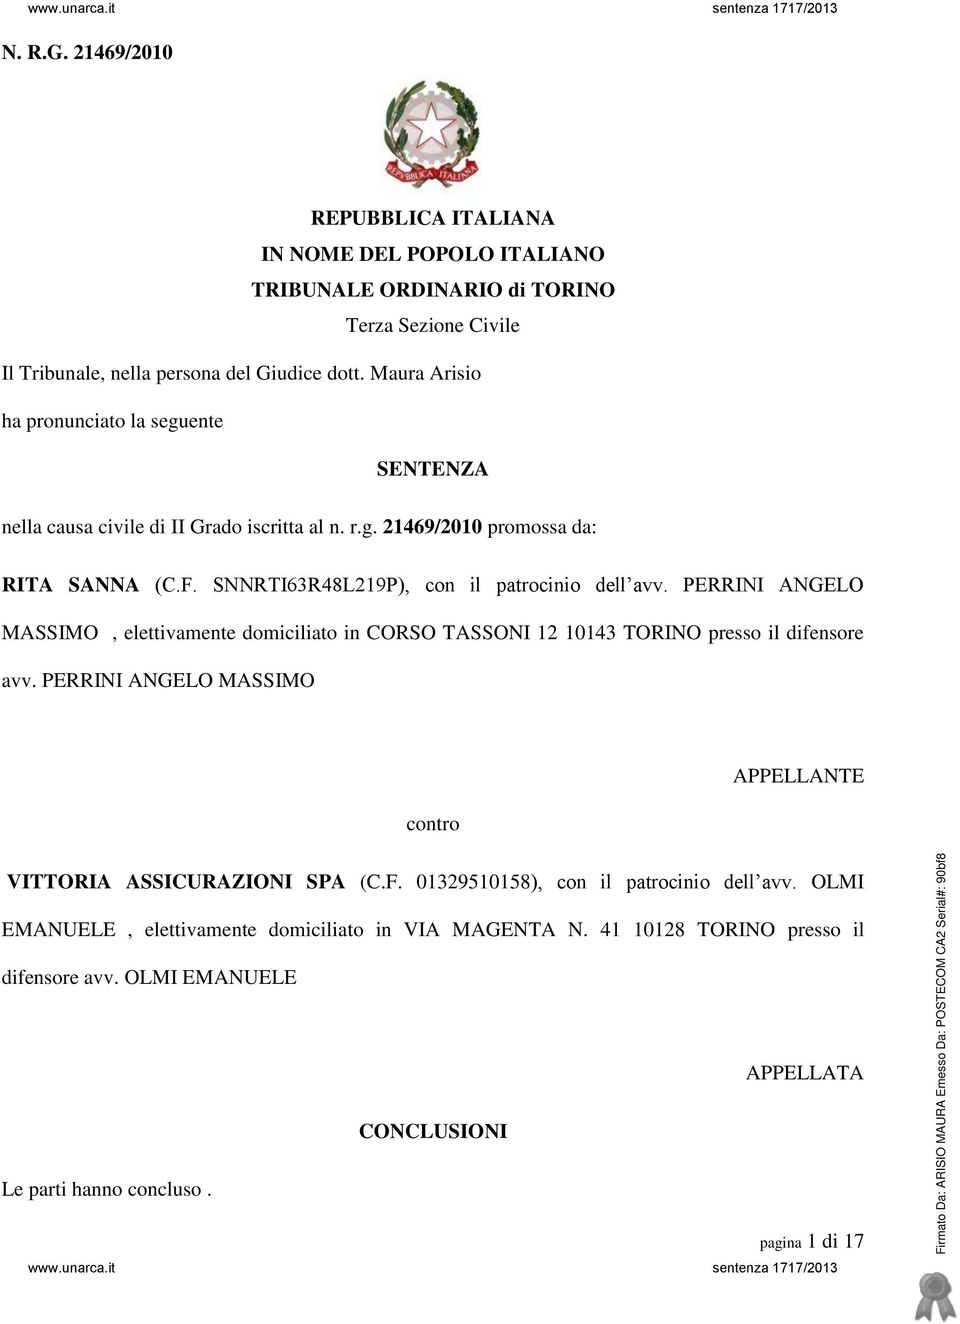 PERRINI ANGELO MASSIMO, elettivamente domiciliato in CORSO TASSONI 12 10143 TORINO presso il difensore avv. PERRINI ANGELO MASSIMO contro APPELLANTE VITTORIA ASSICURAZIONI SPA (C.F.